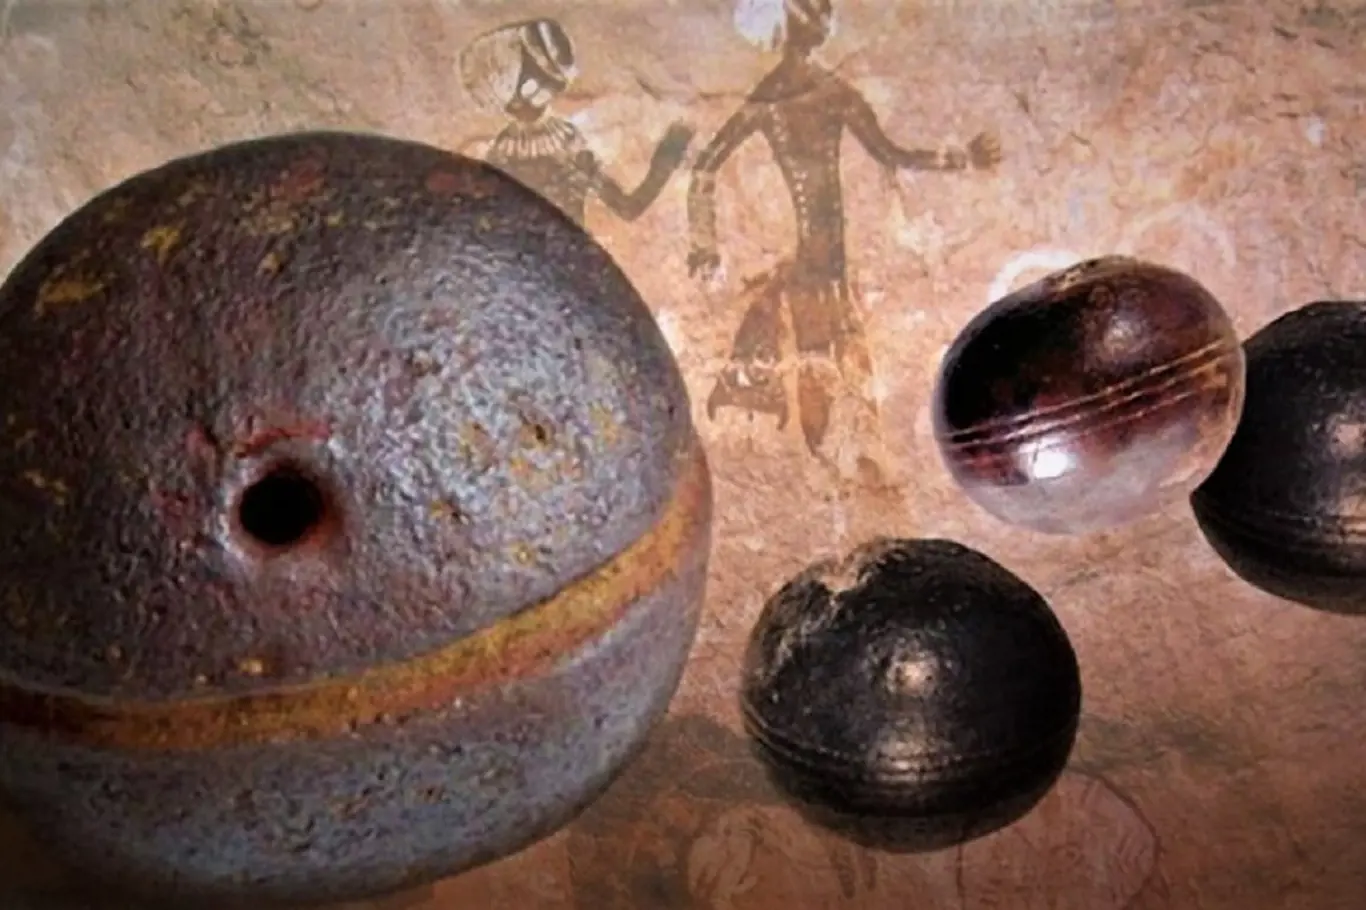 Klerksdorpské koule jsou malé předměty kulovitého až diskovitého tvaru, které shromáždili horníci ve starých ložiscích pyrofylitu v Jižní Africe.